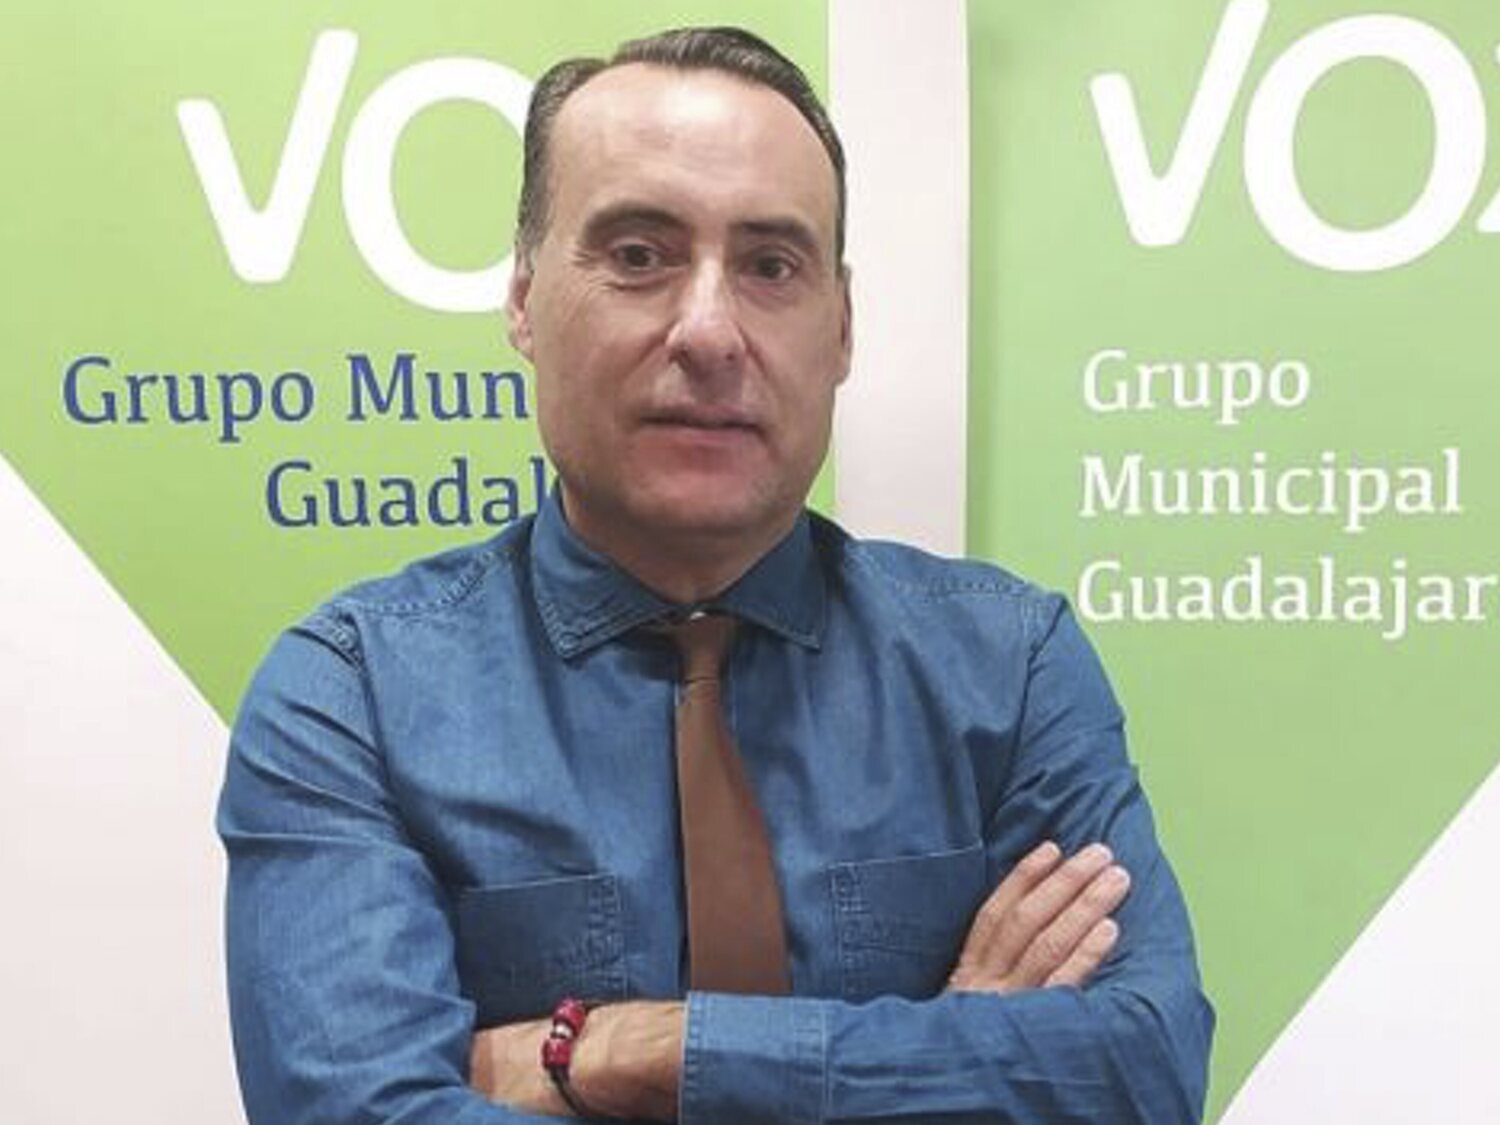 El portavoz de VOX en Guadalajara, ideólogo del veto parental, deja el partido, acusa a Abascal de ser un "dictador" y ficha por Olona